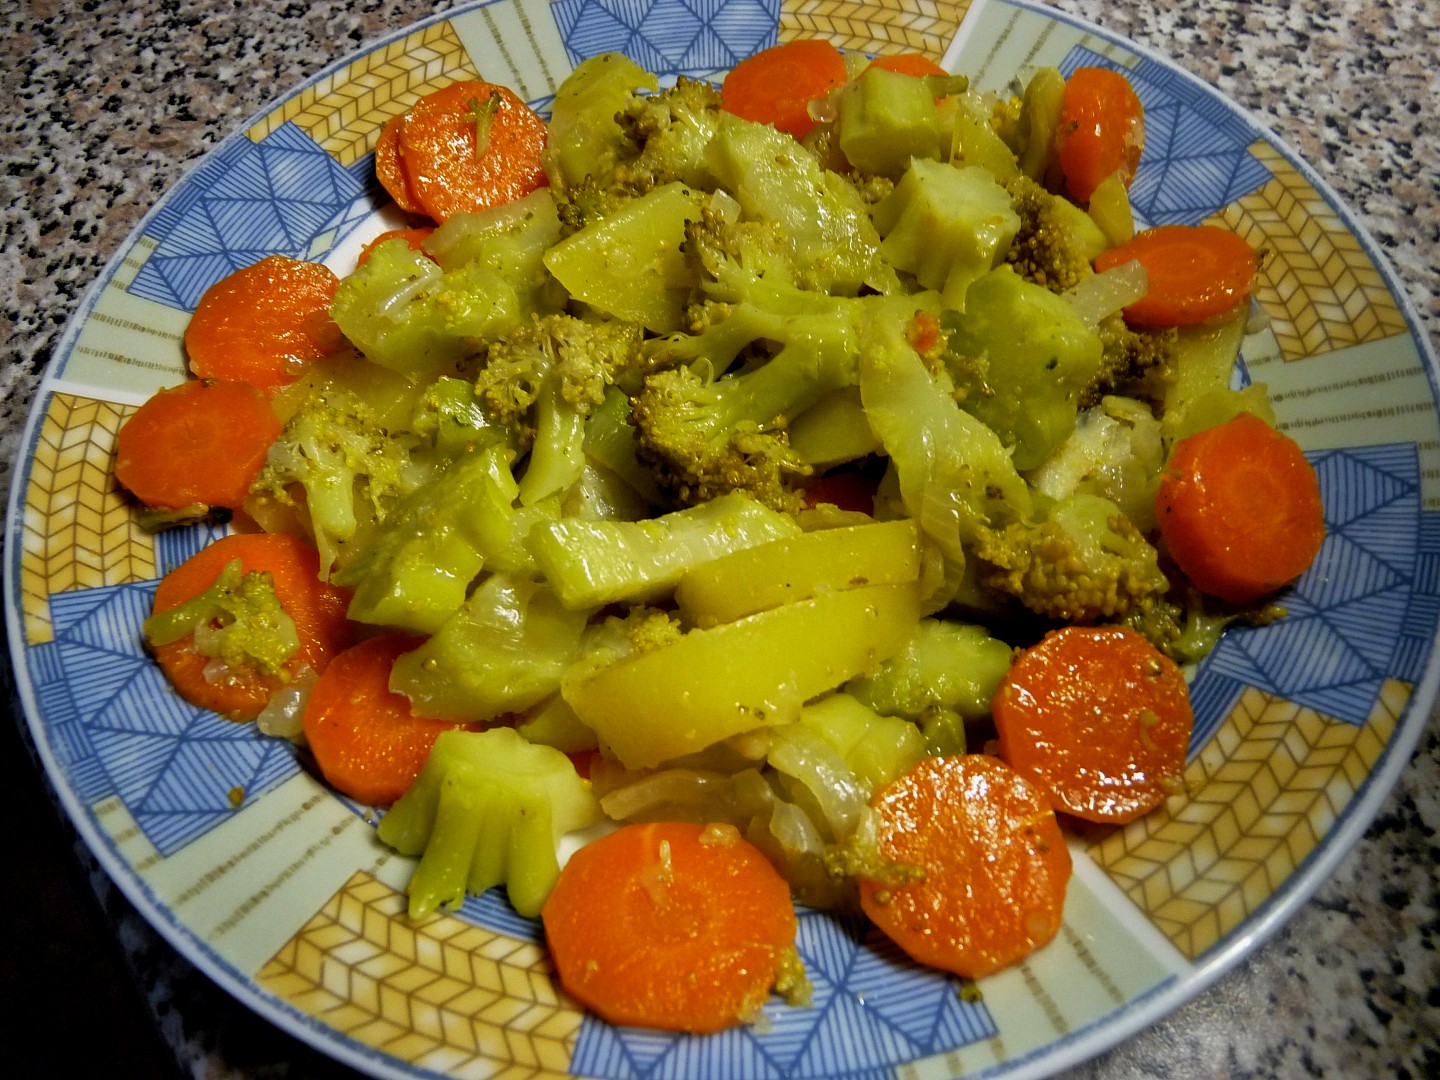 Brokolice brambory, mrkev - v páře a rychlovka neskutečně dobrá